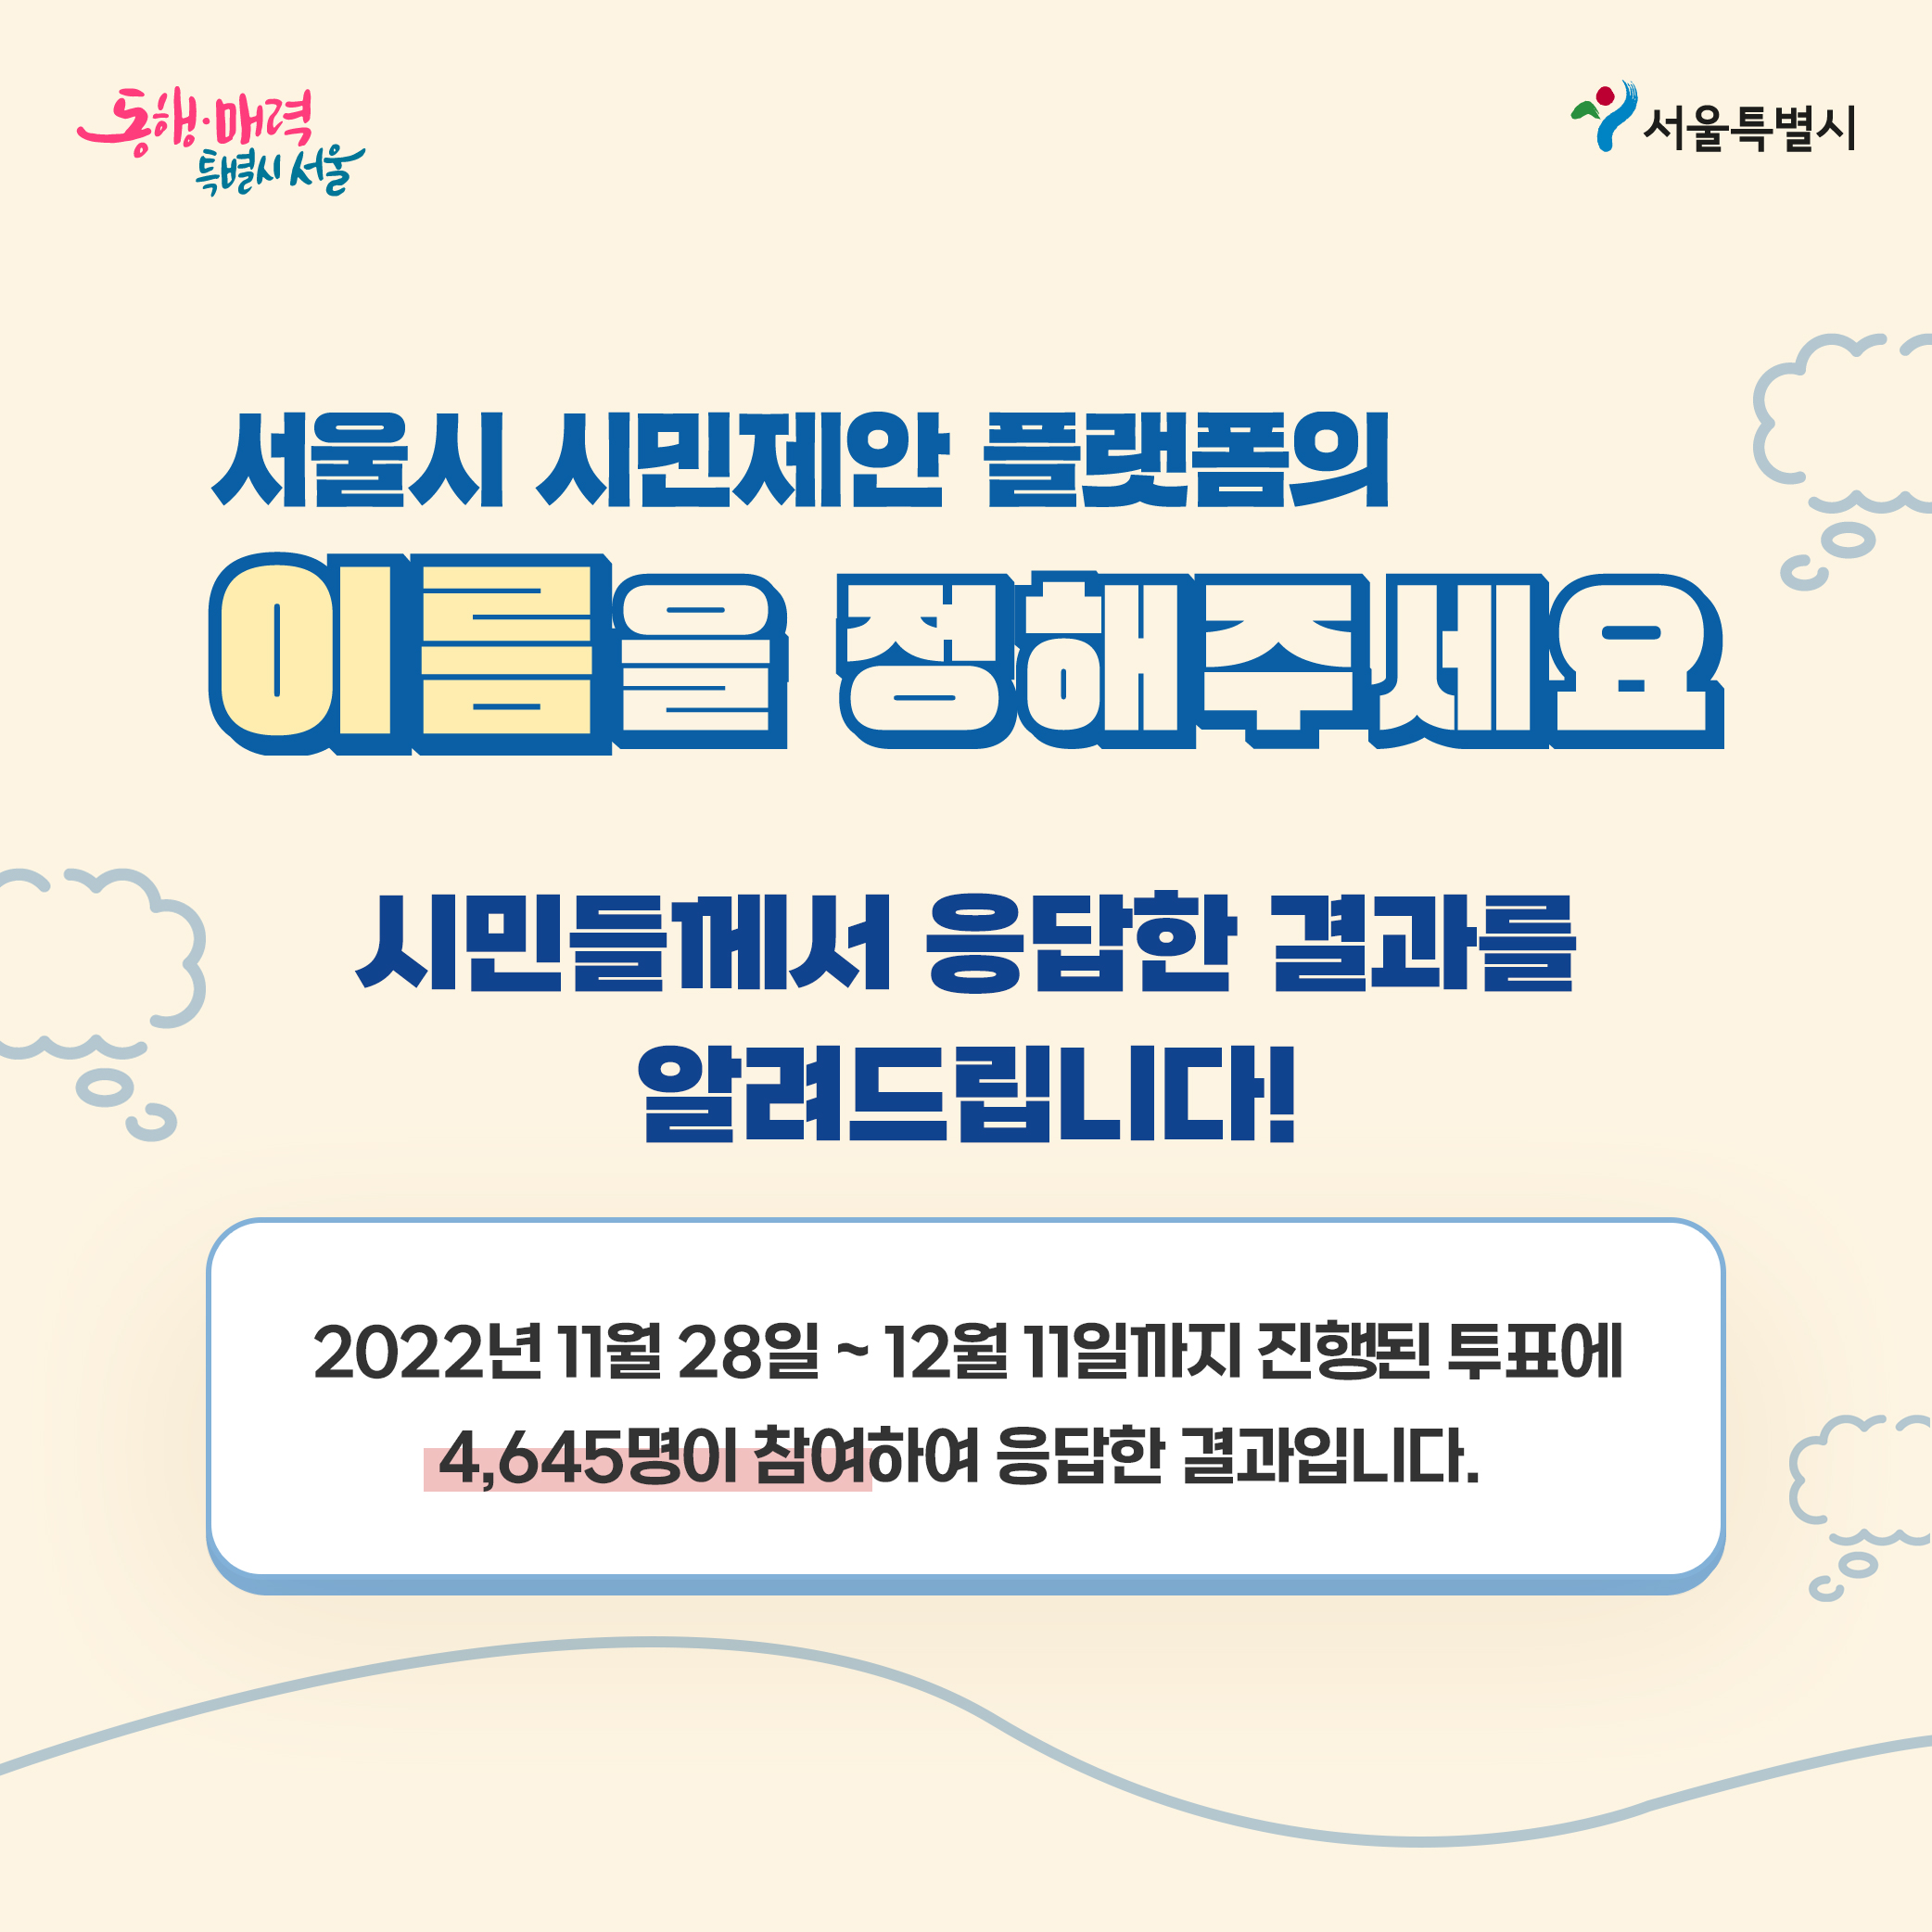 서울시 시민제안플랫폼의 이름을 정해주세요! 시민들께서 응답한 결과를 알려드립니다! 2022년 11월28일~12월11일 까지 진행된 투표이 4645명이 참여하여 응답한 결과 입니다.